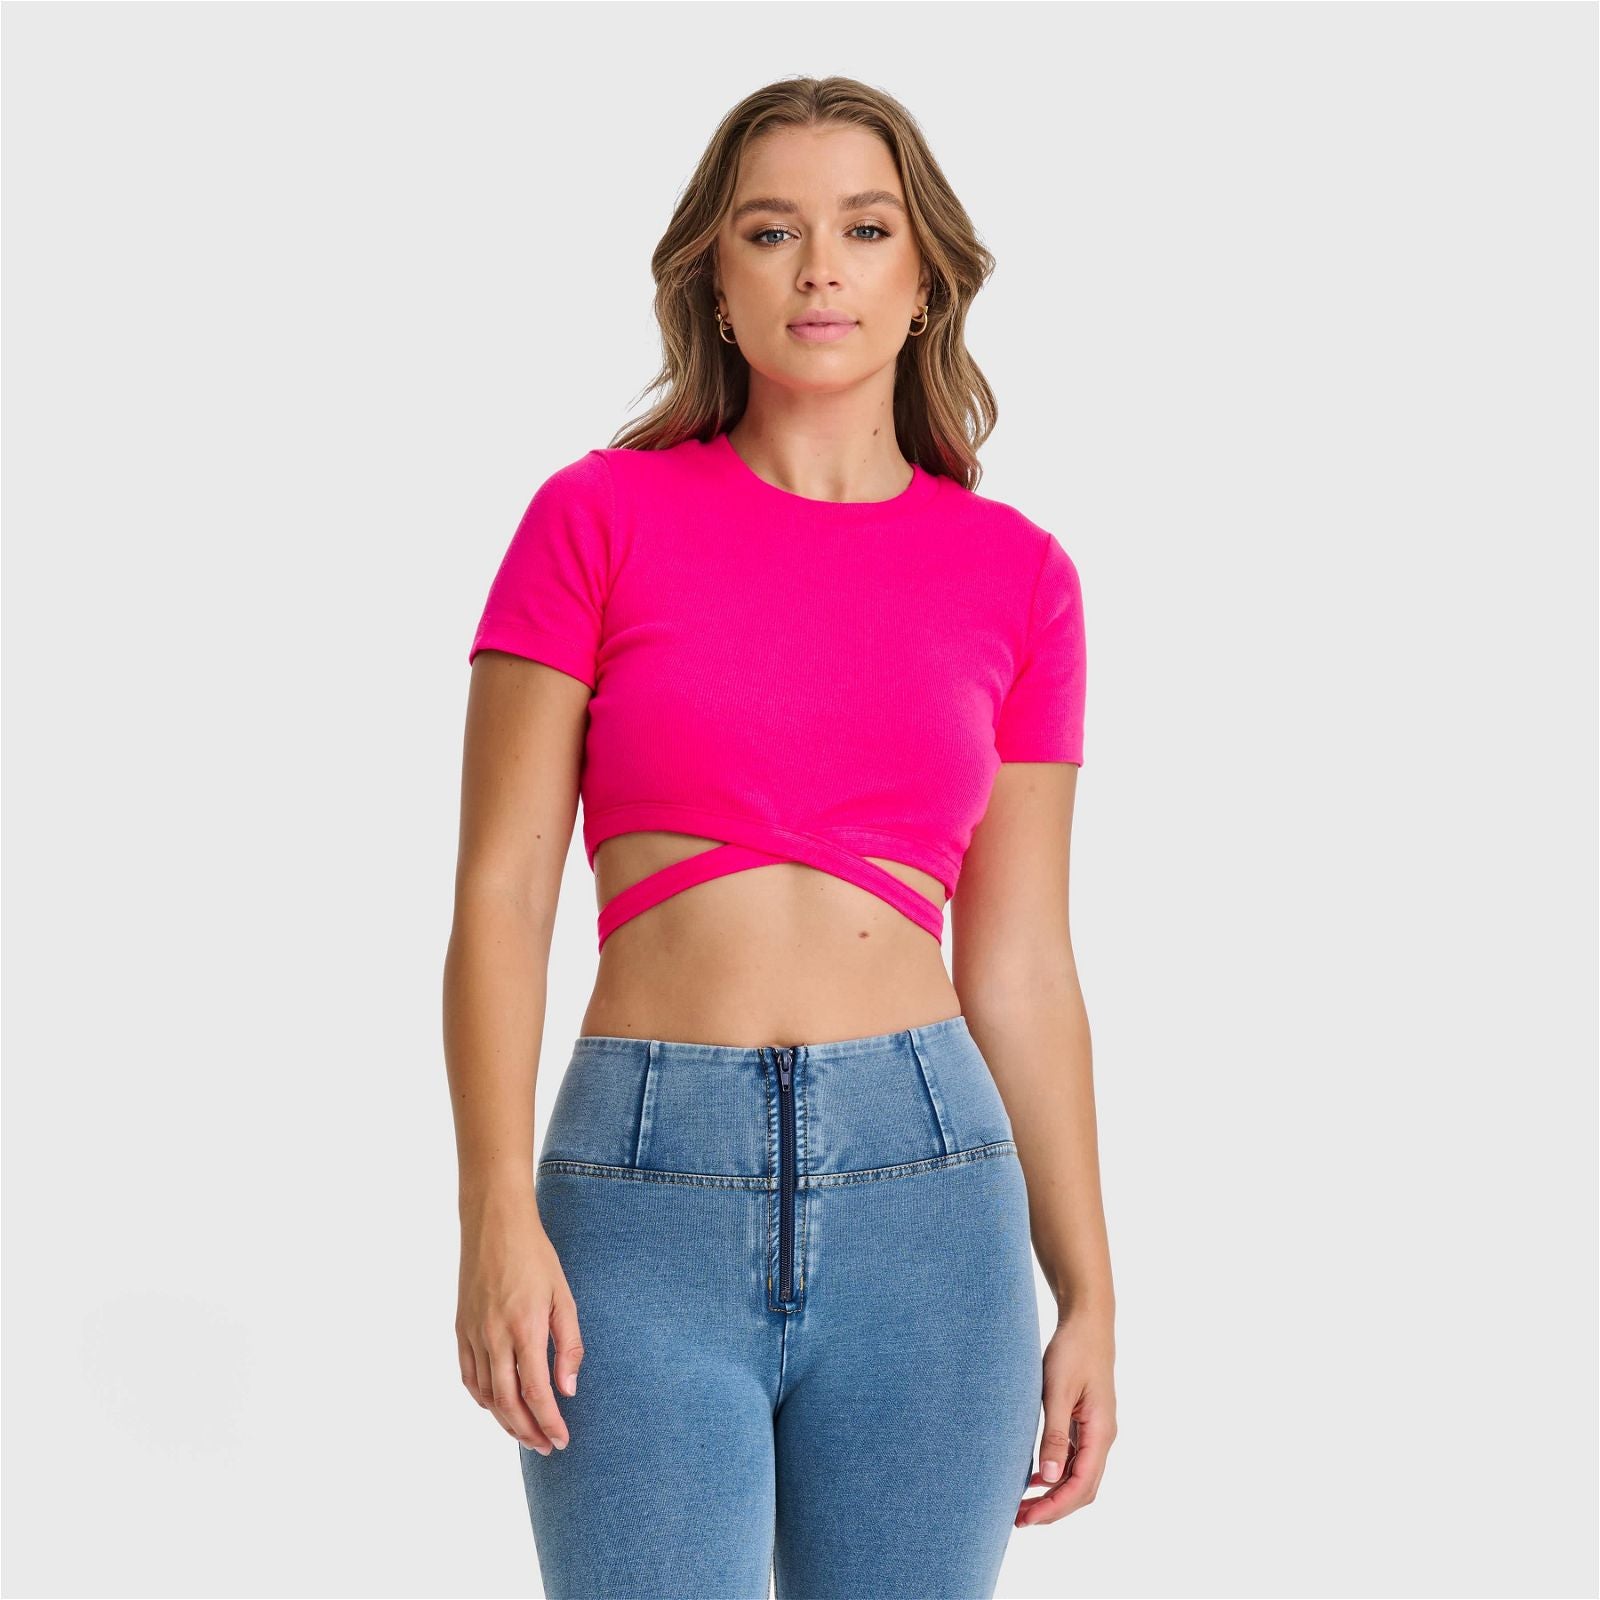 Camiseta corta cruzada - Rosa 1